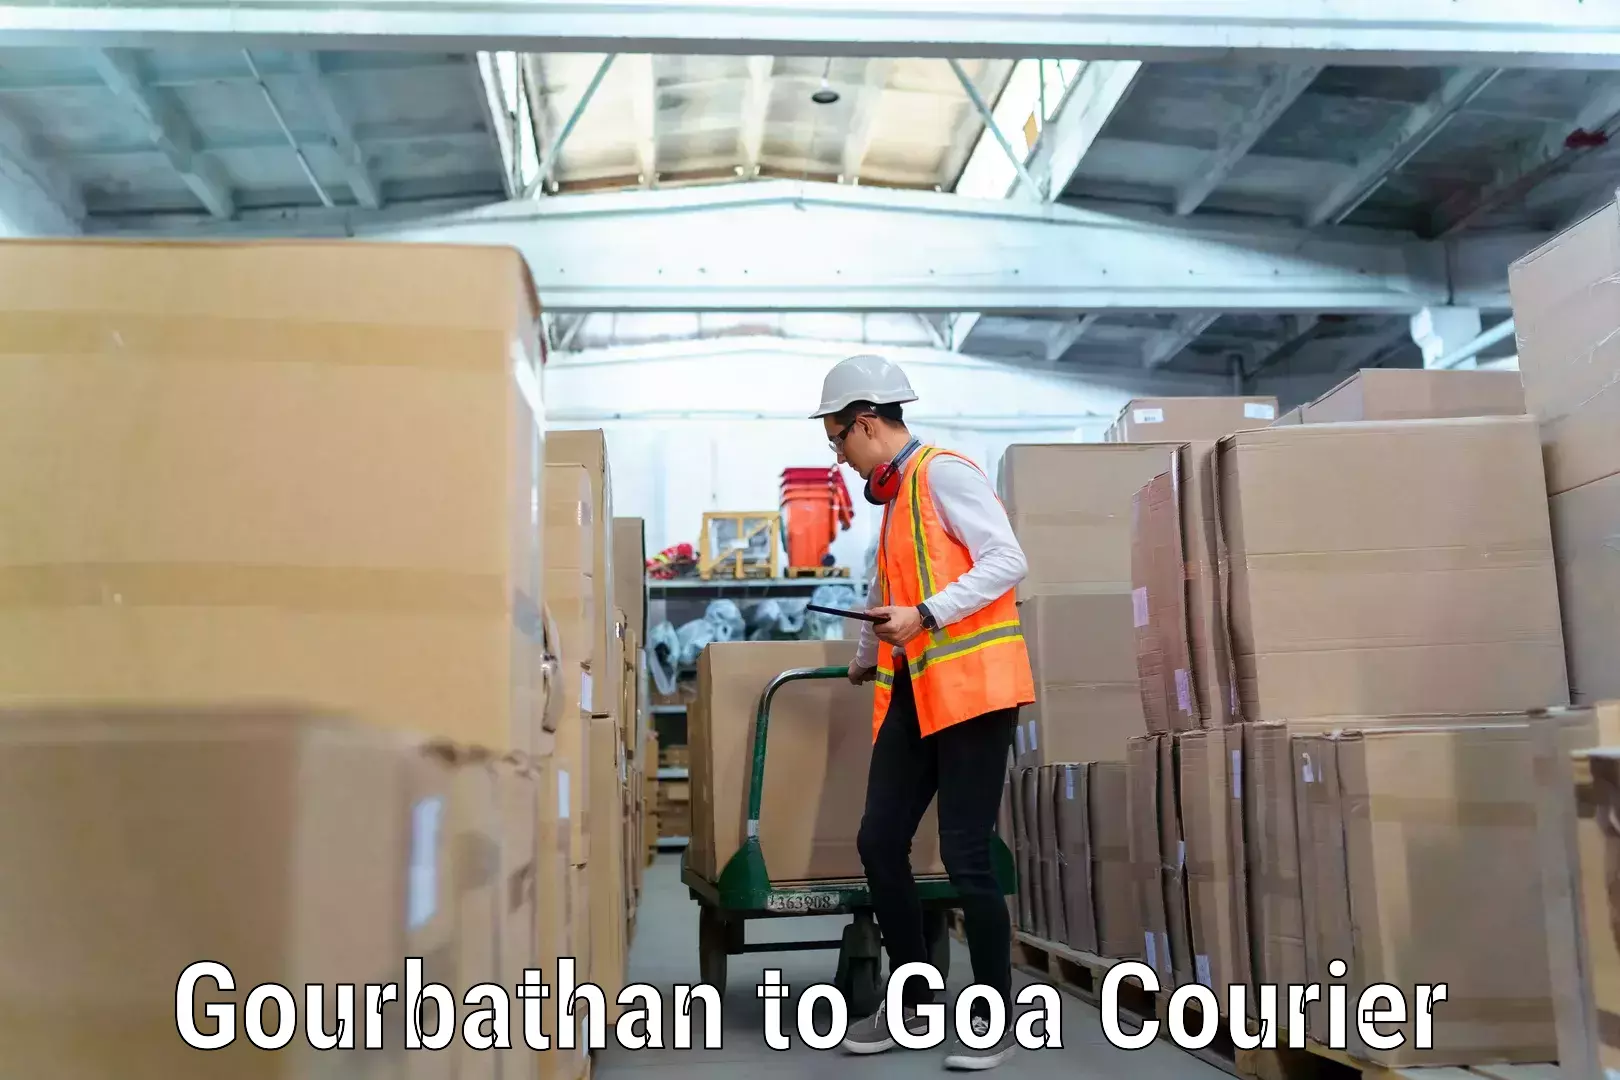 Stress-free furniture moving Gourbathan to Goa